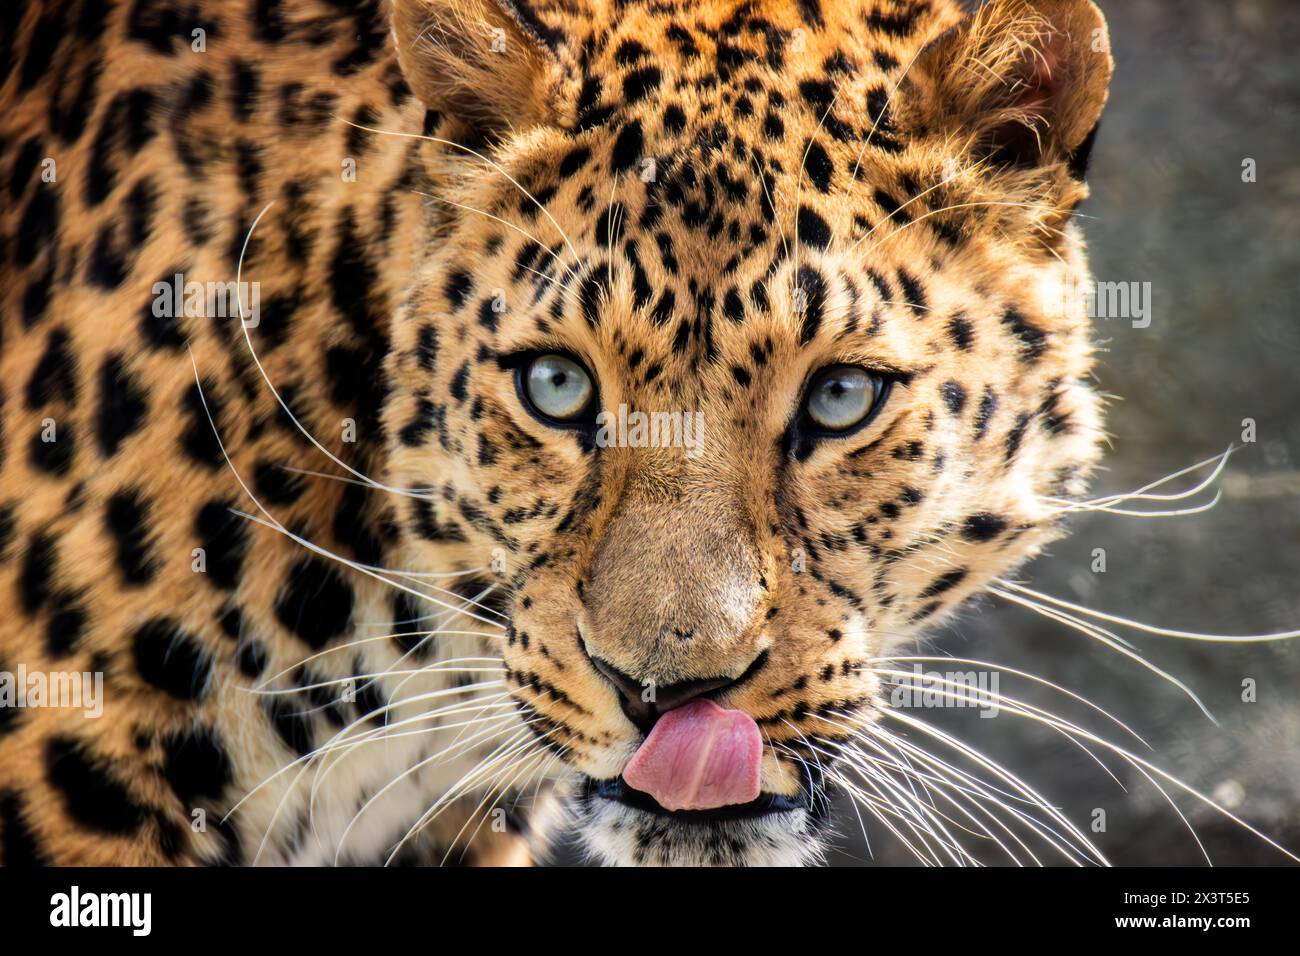 Amur Leopard portrait Stock Photo